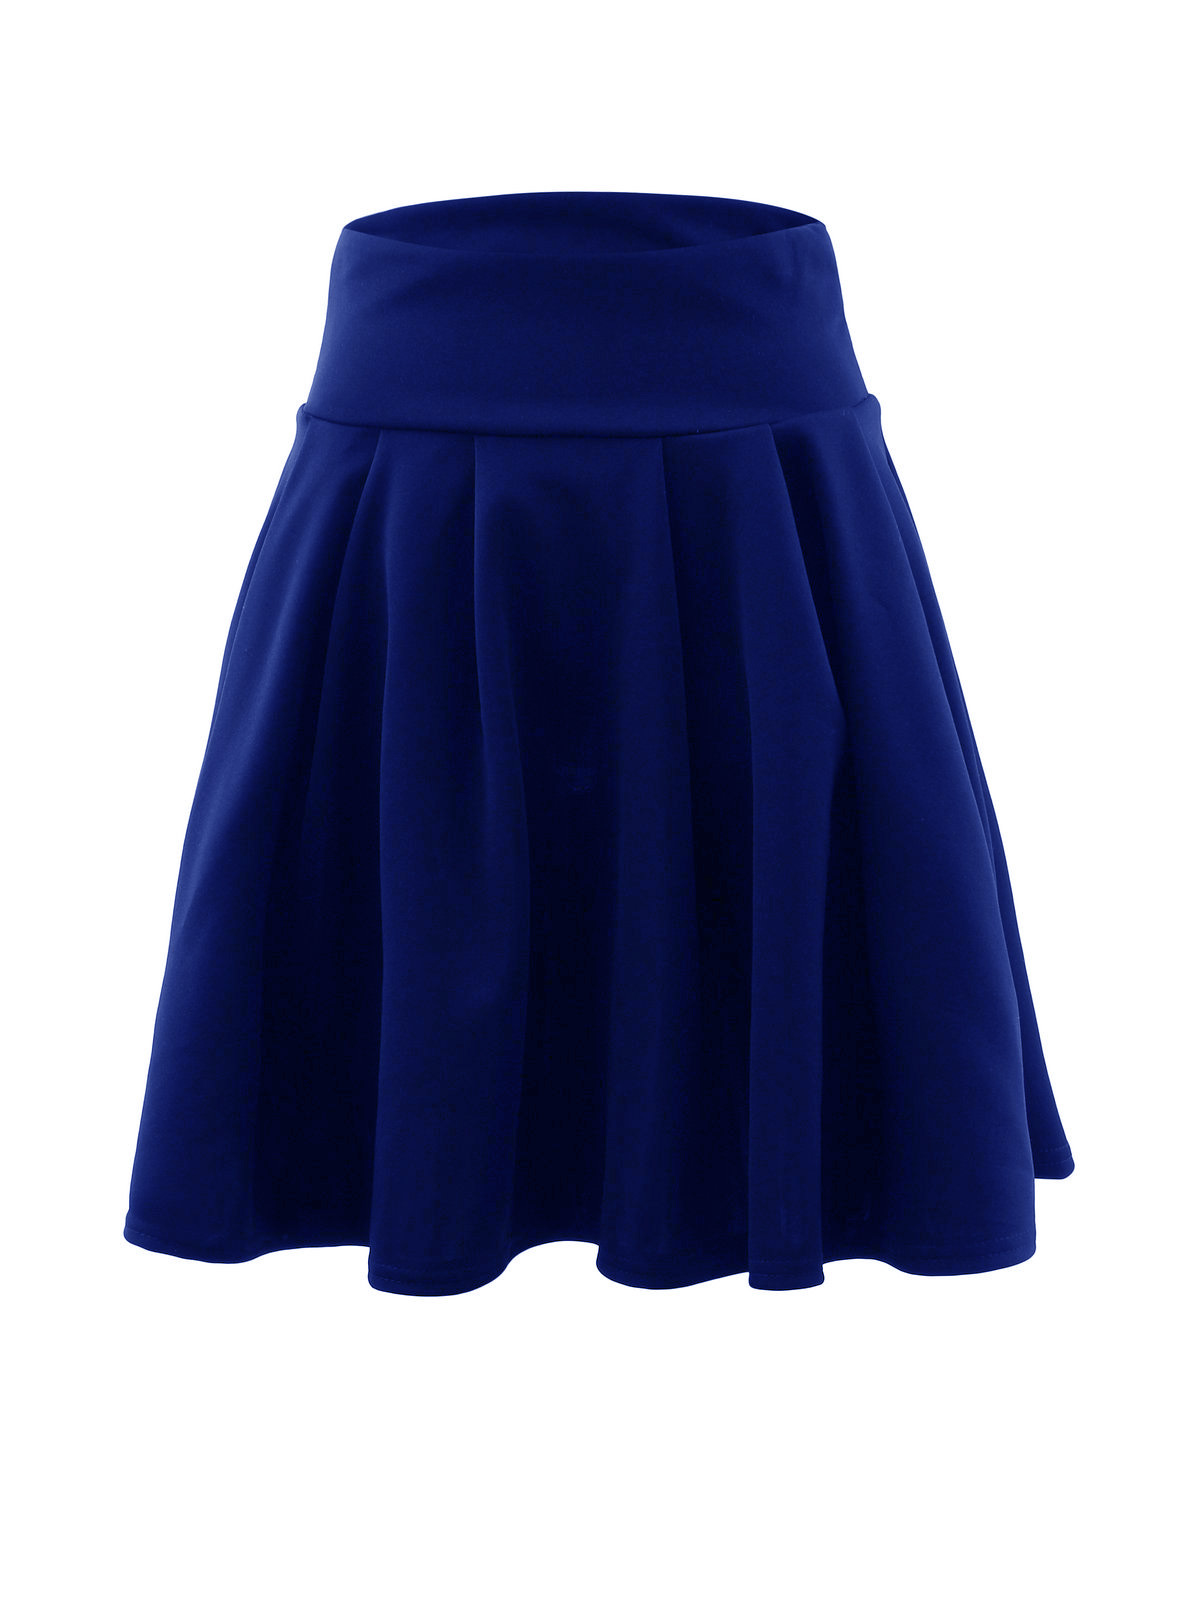 Royal Blue High Rise Short Ruffled Skater Skirt